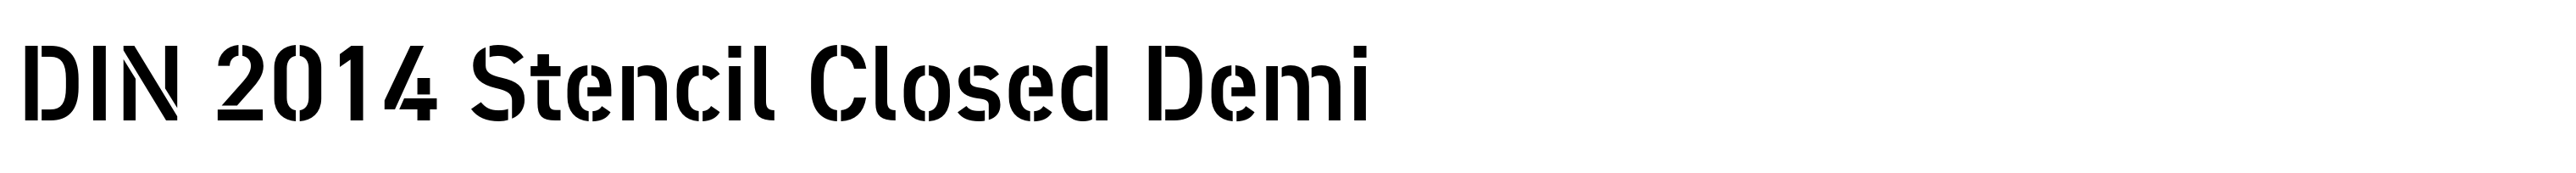 DIN 2014 Stencil Closed Demi